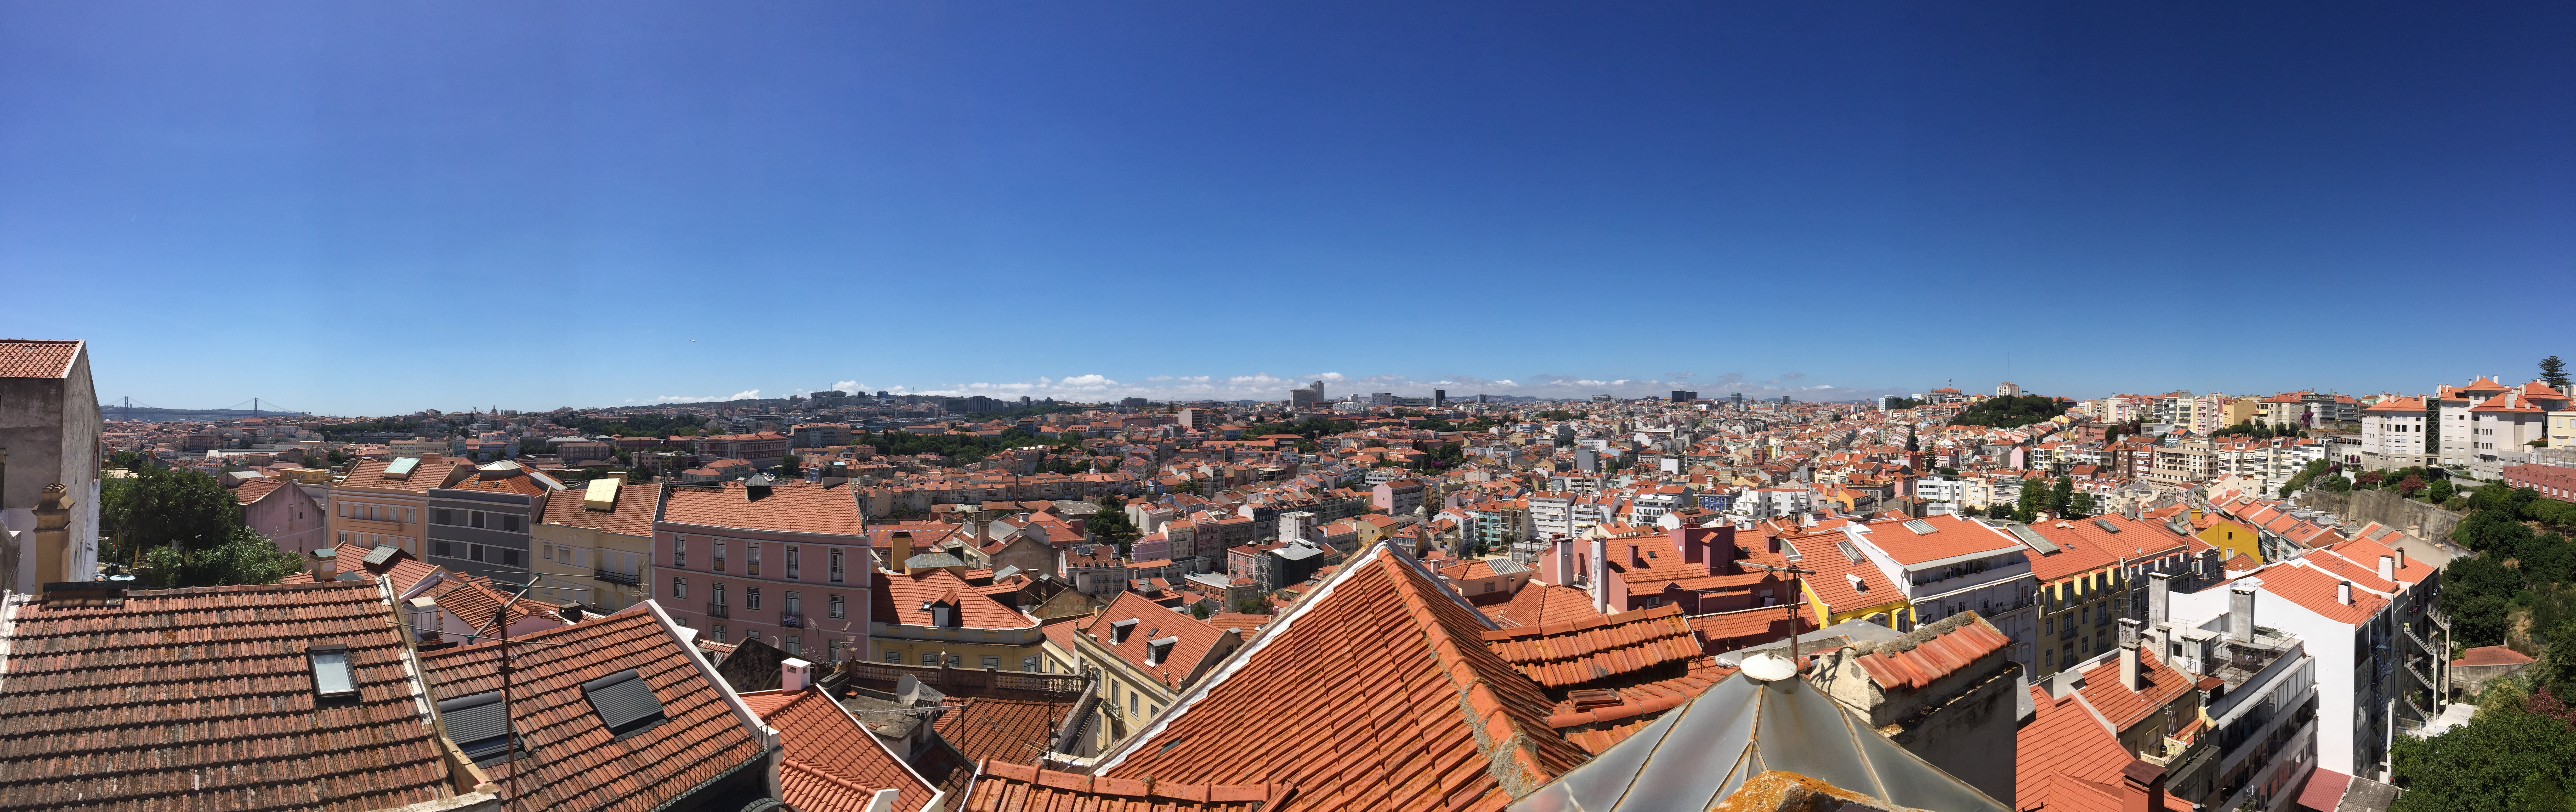 Lisbon Heritage